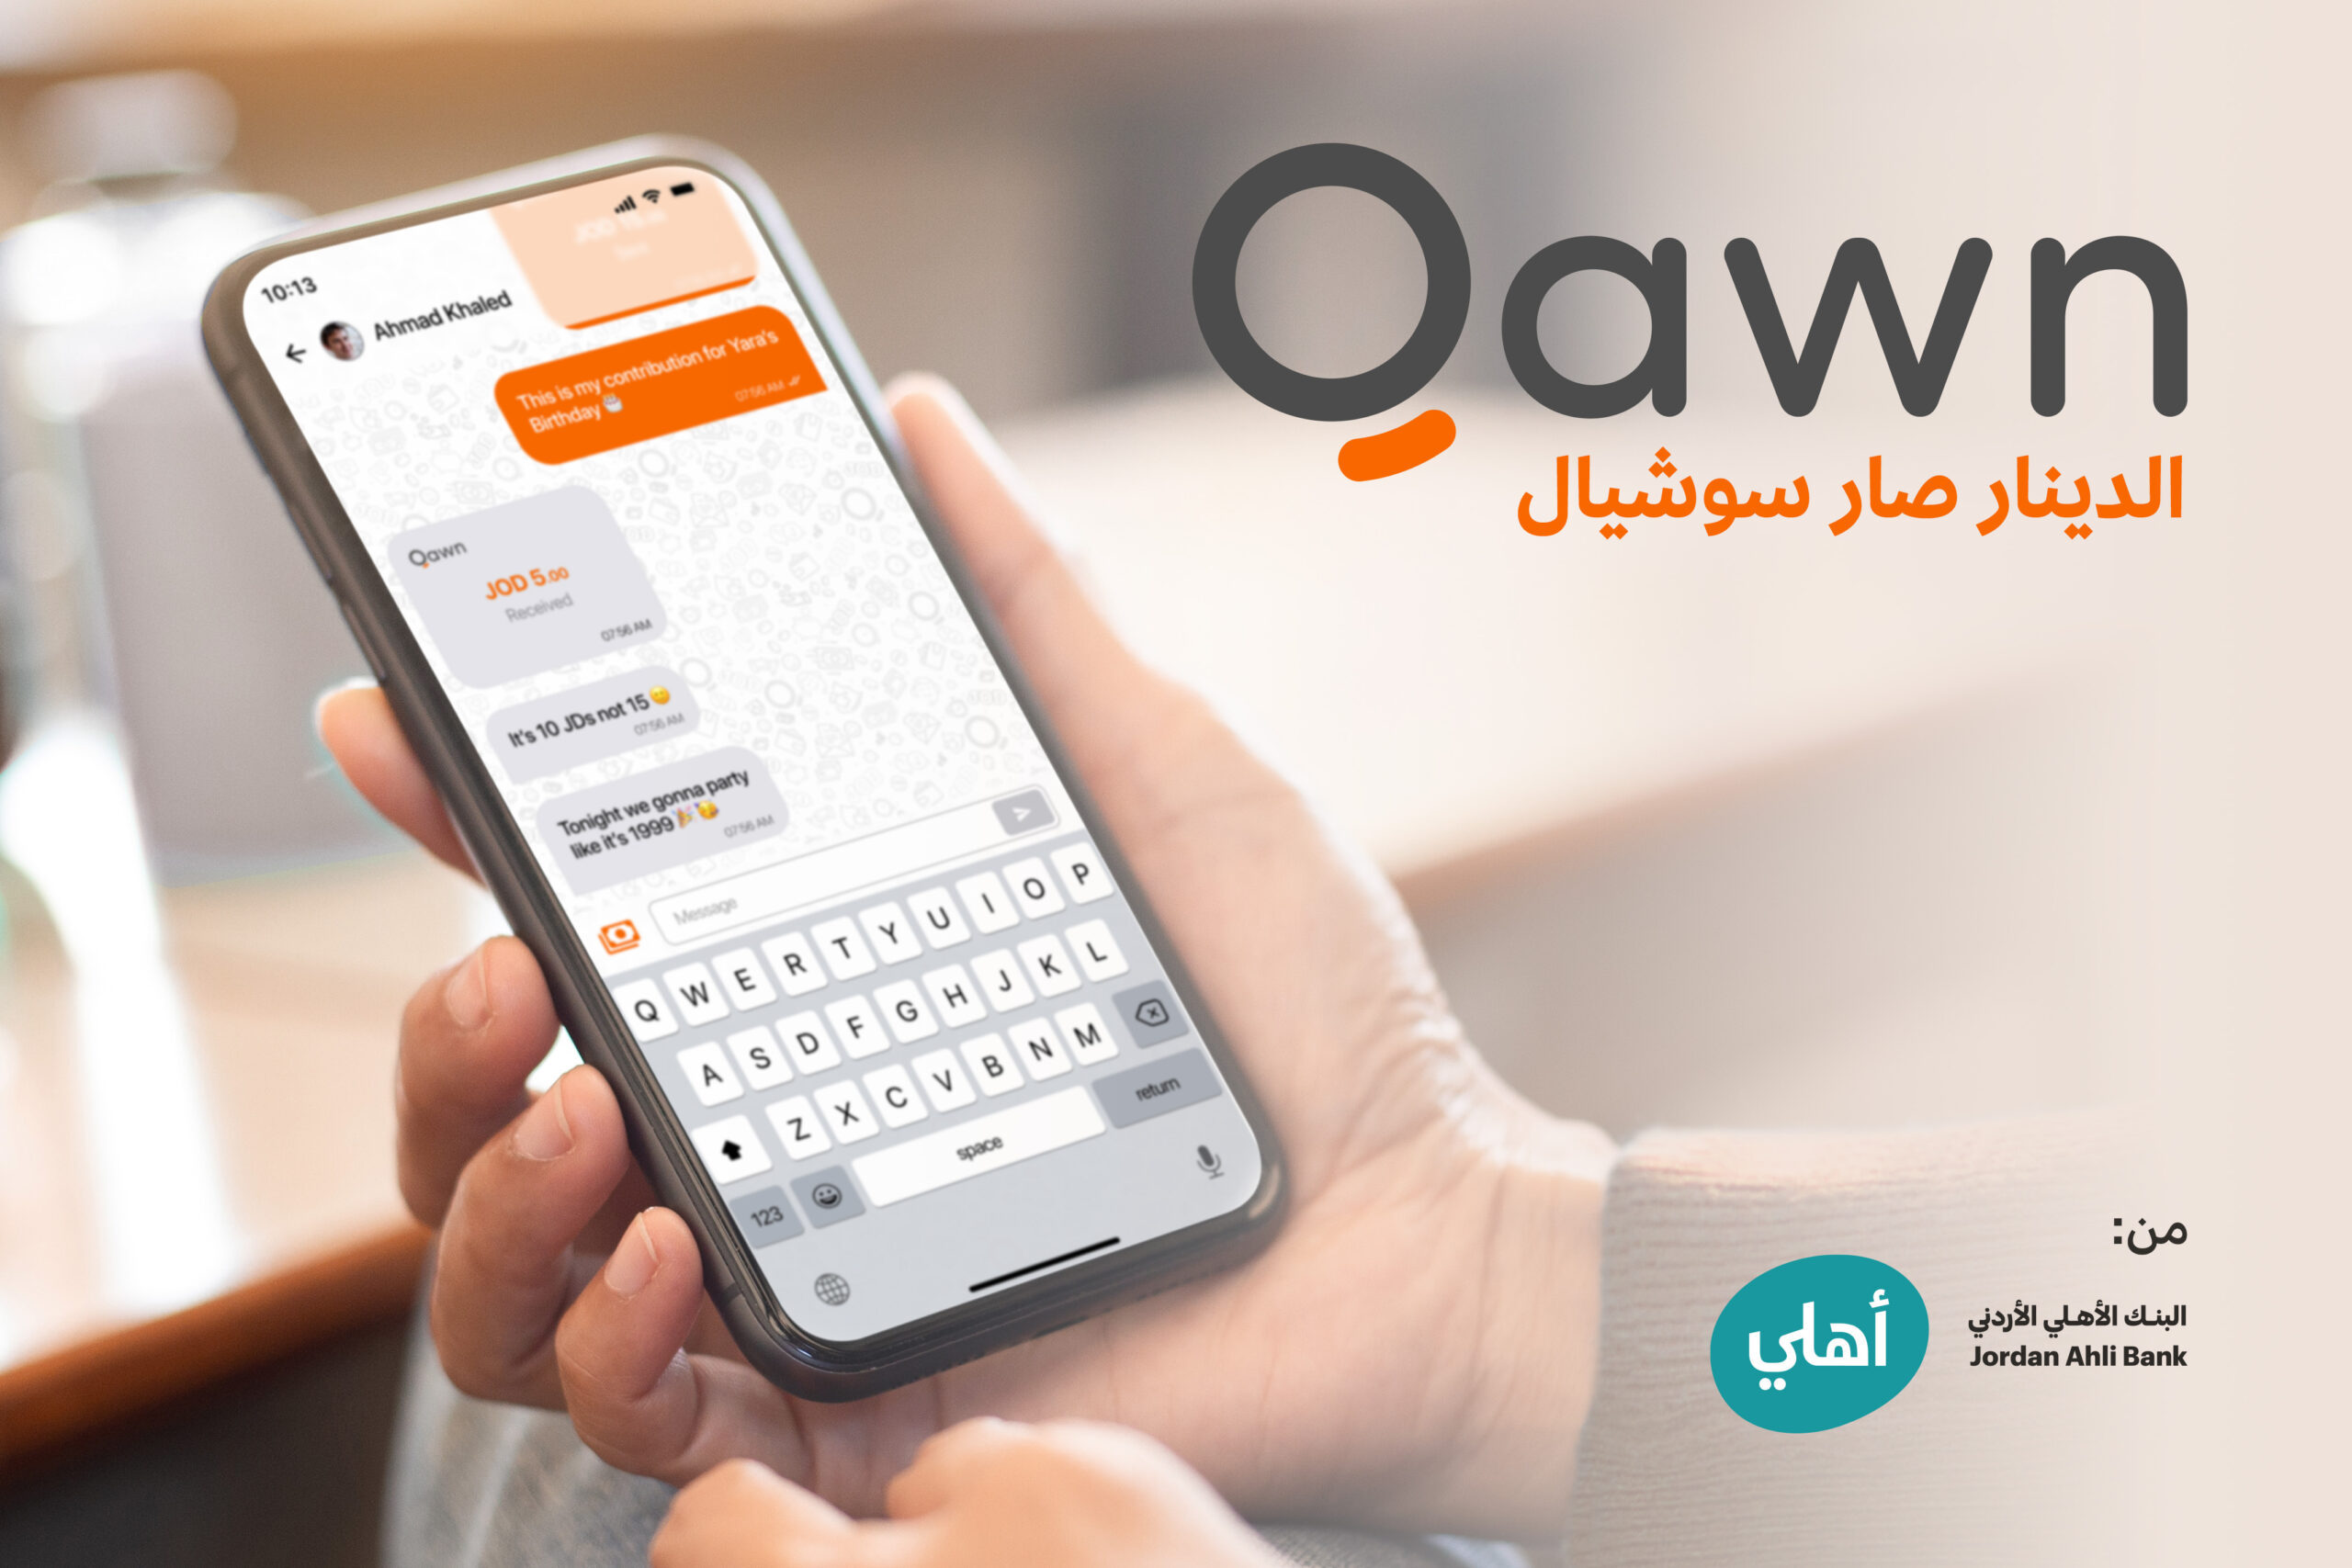 البنك الأهلي الأردني يطلق كوْن “Qawn” أول منصة اجتماعية للدفع الالكتروني “Social Payment Platform” في الأردن